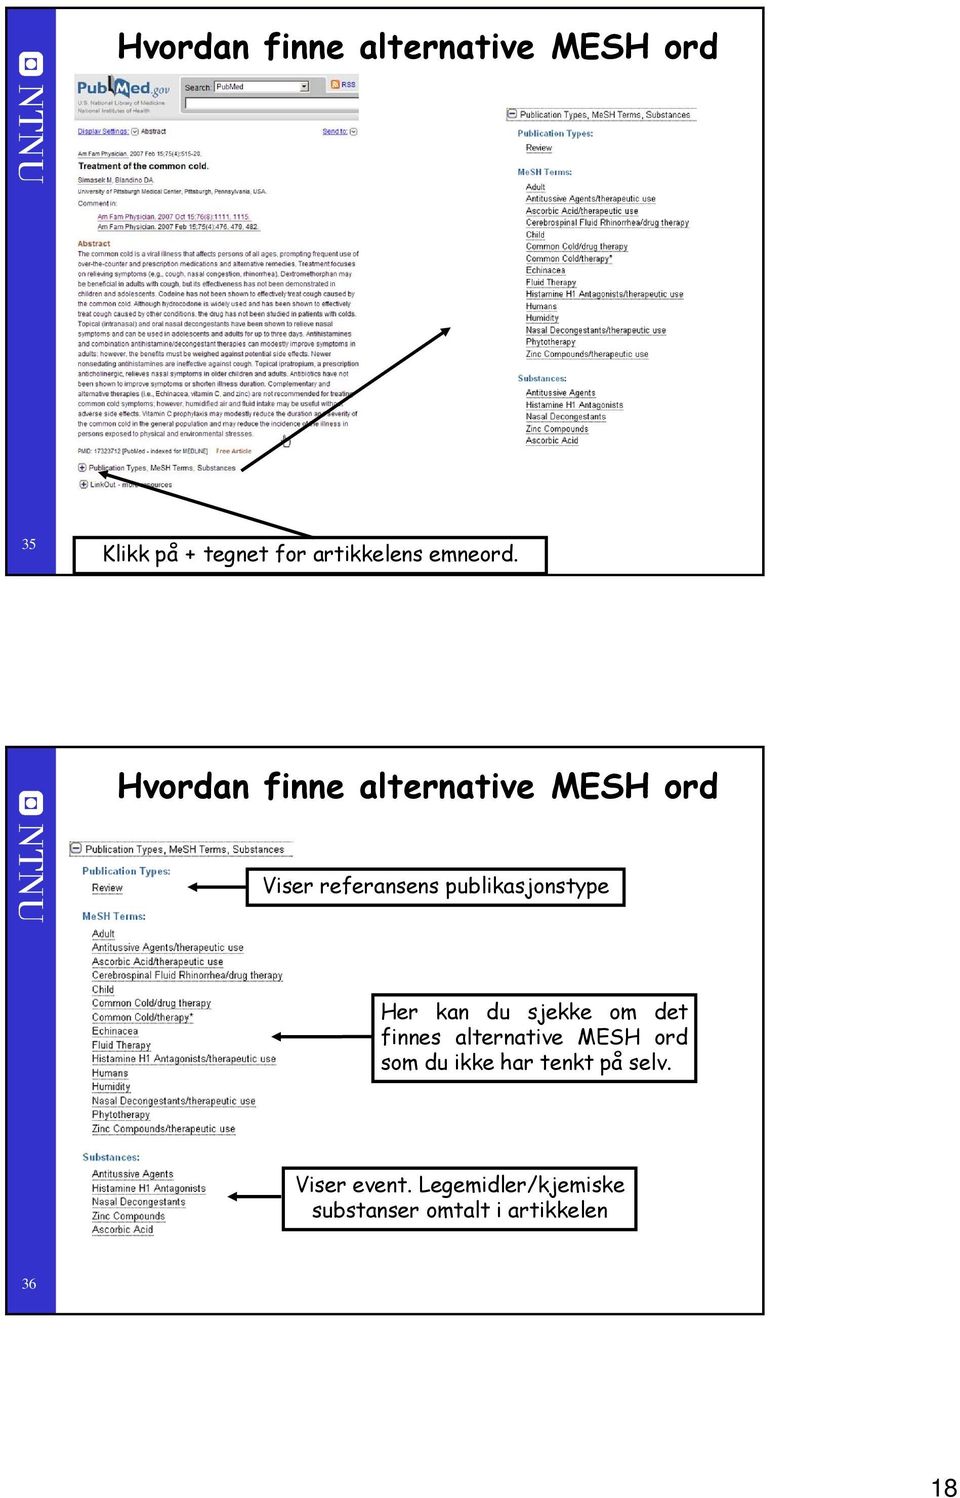 Hvordan finne alternative MESH ord Viser referansens publikasjonstype Her